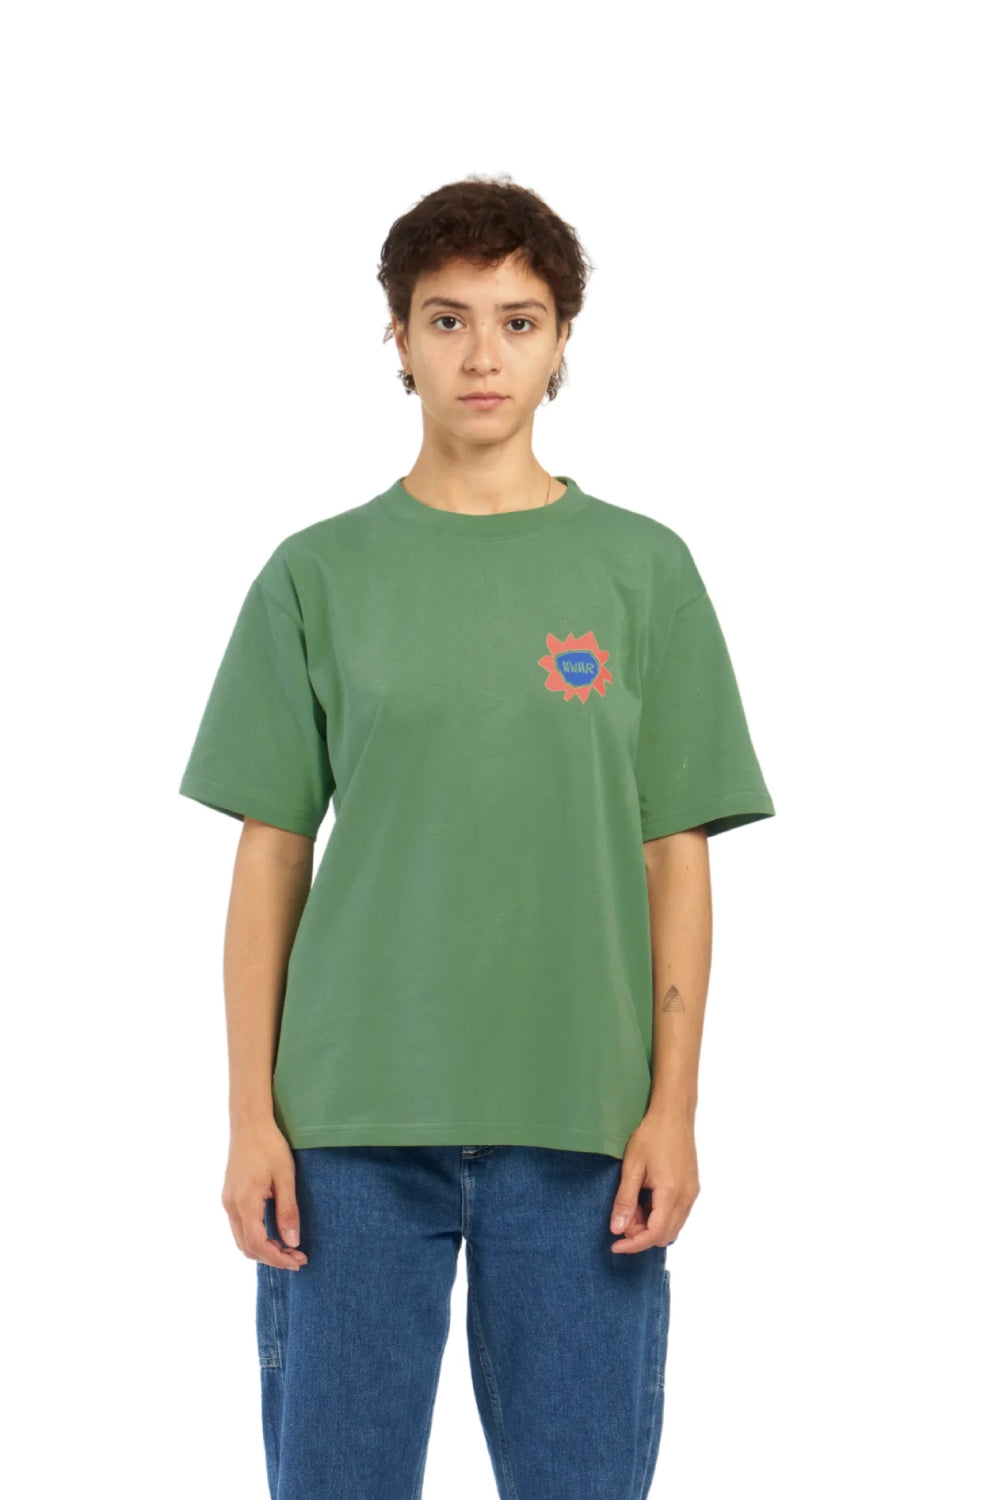 camiseta de corte ancho en color verde con pequeño dibujo en el pecho